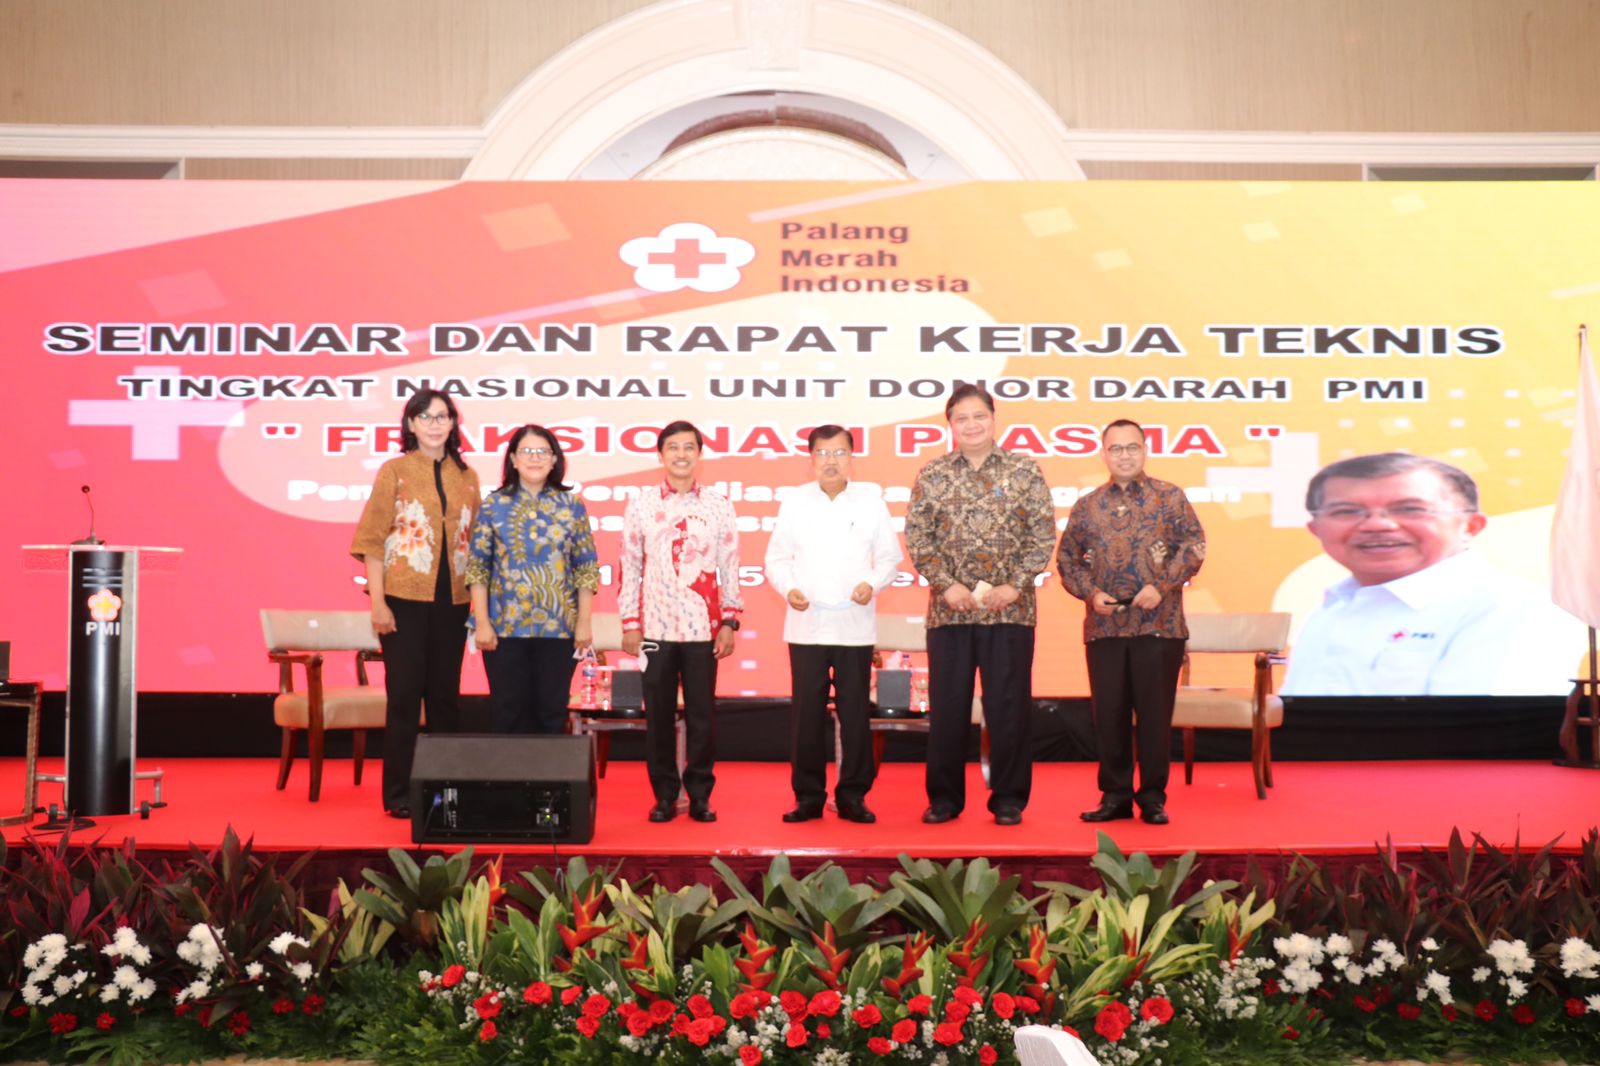 	Seminar dan Rapat Kerja Teknis Tingkat Nasional Unit Donor Darah Palang Merah Indonesia (UDD PMI) dengan tema “Fraksionasi Plasma” di Jakarta, Selasa 14 Desember 2021.